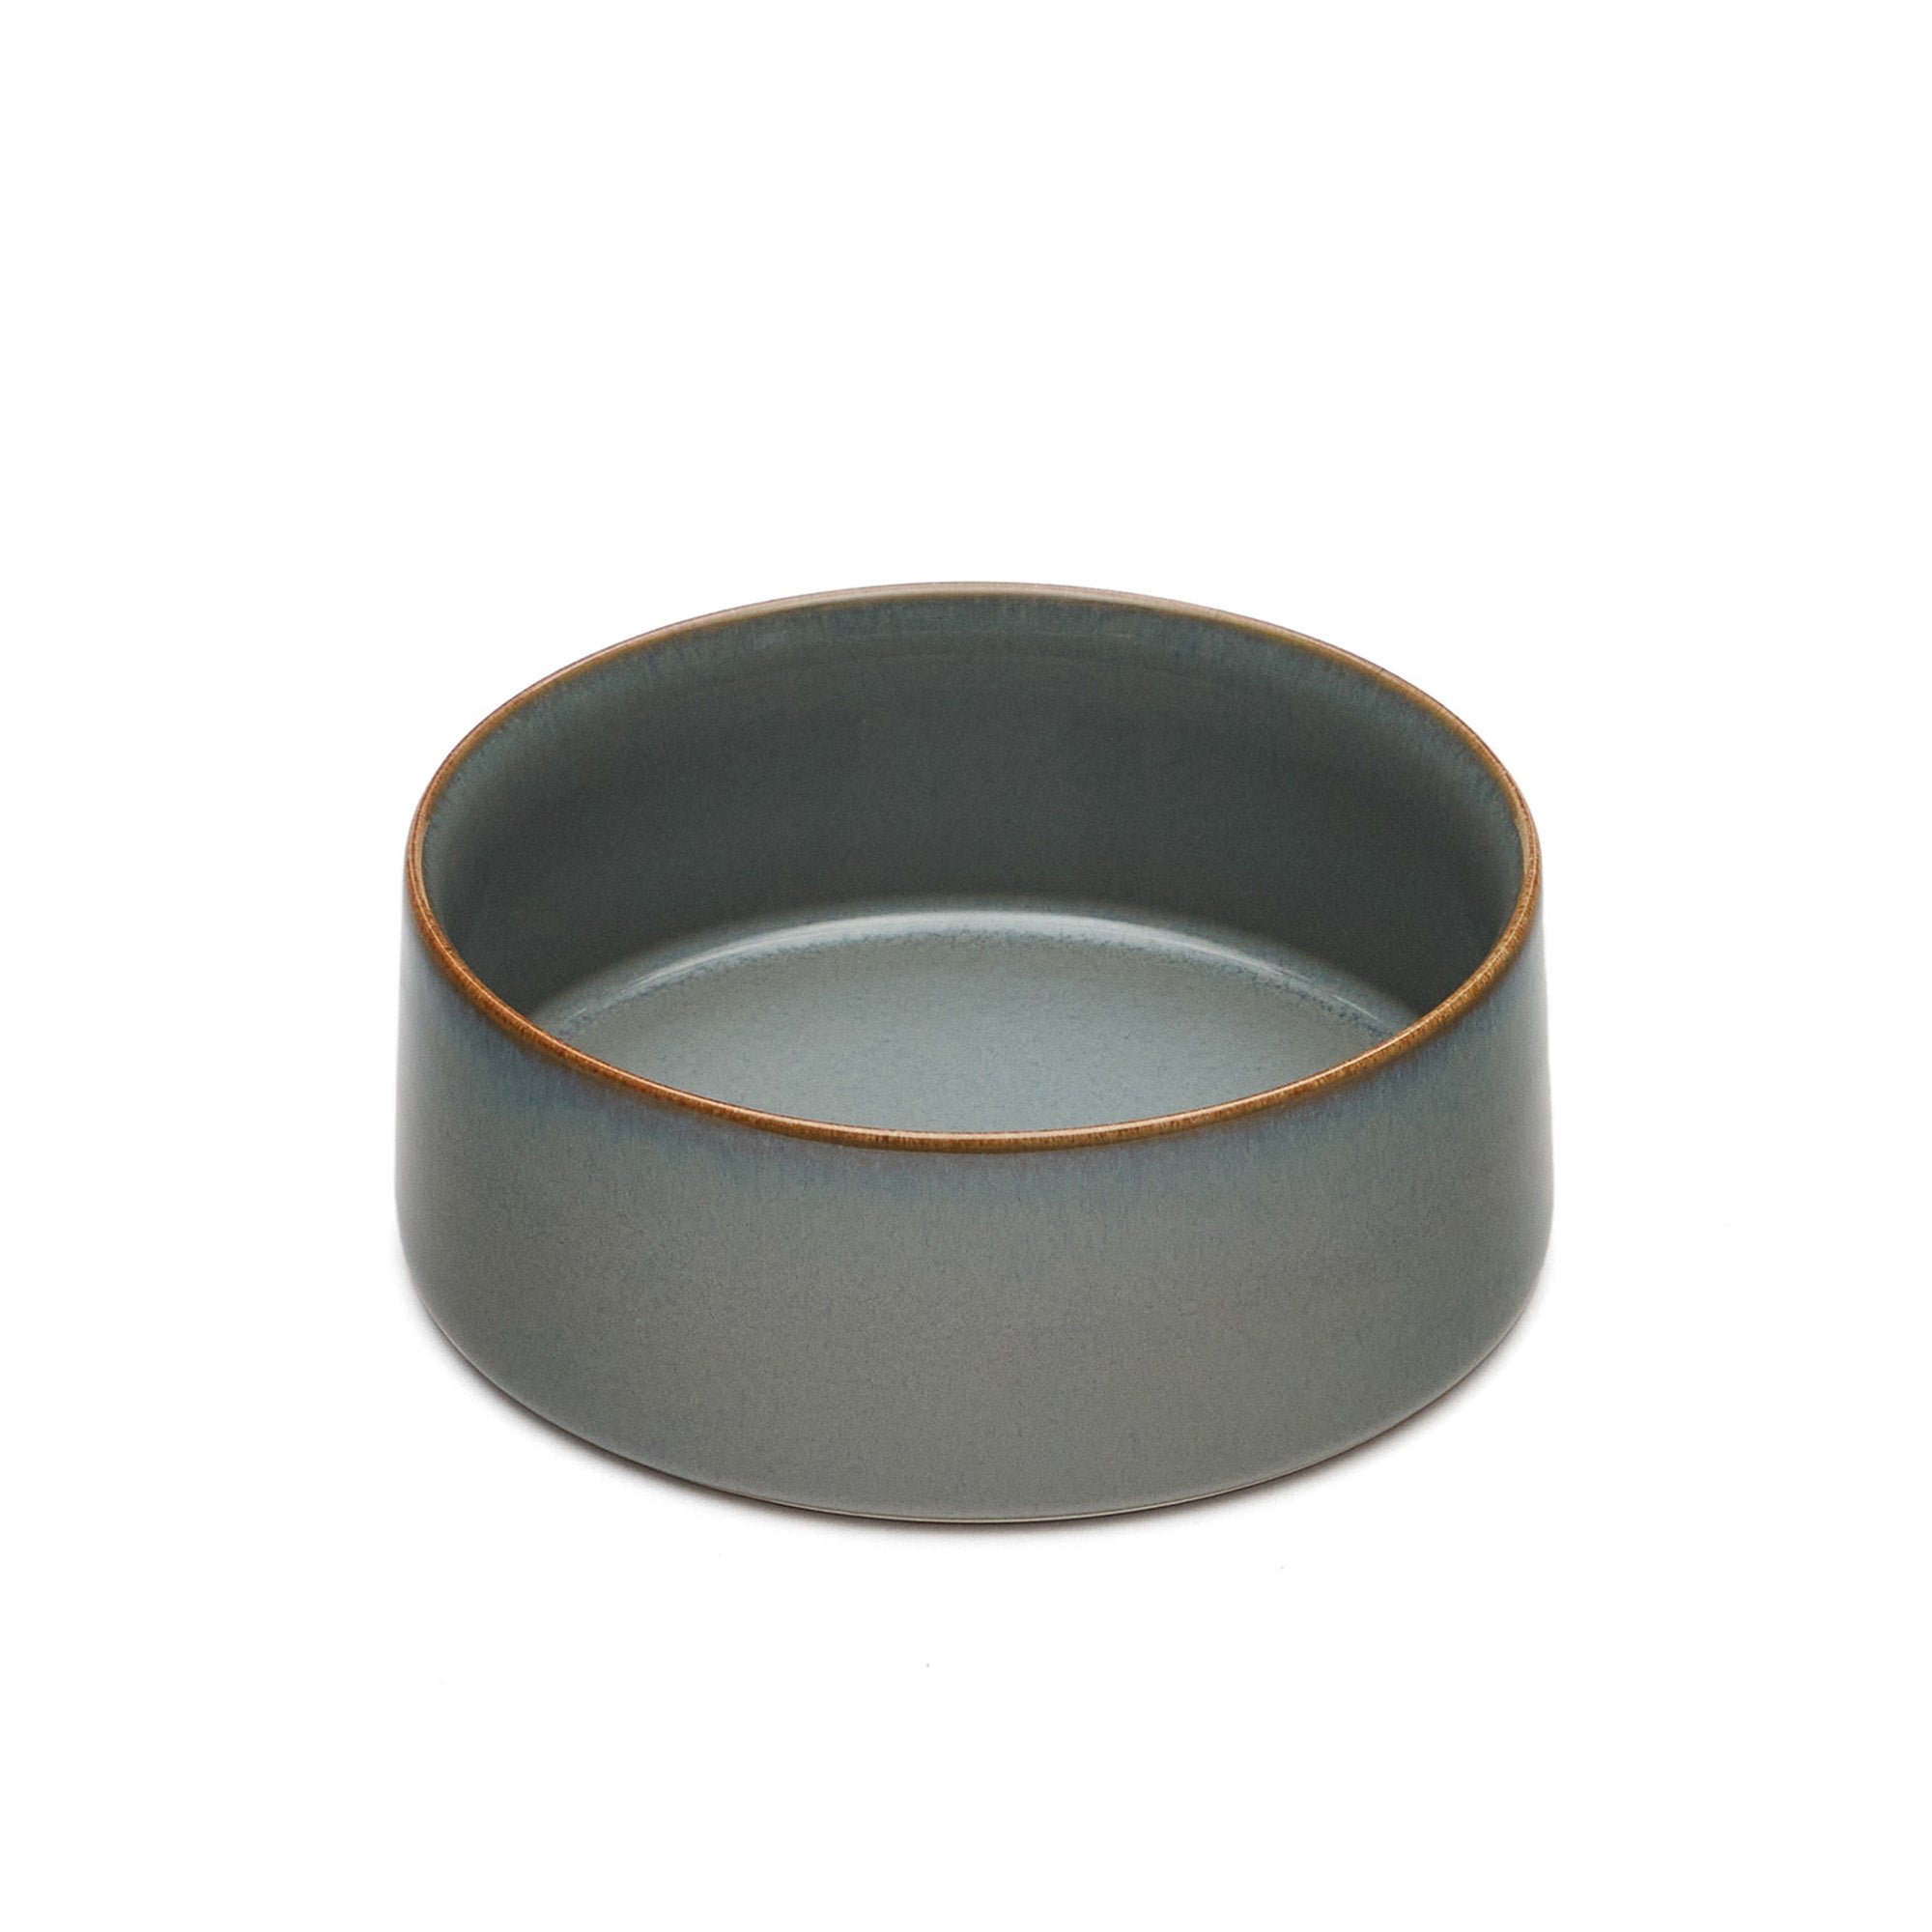 Lescala ceramic bowl in blue